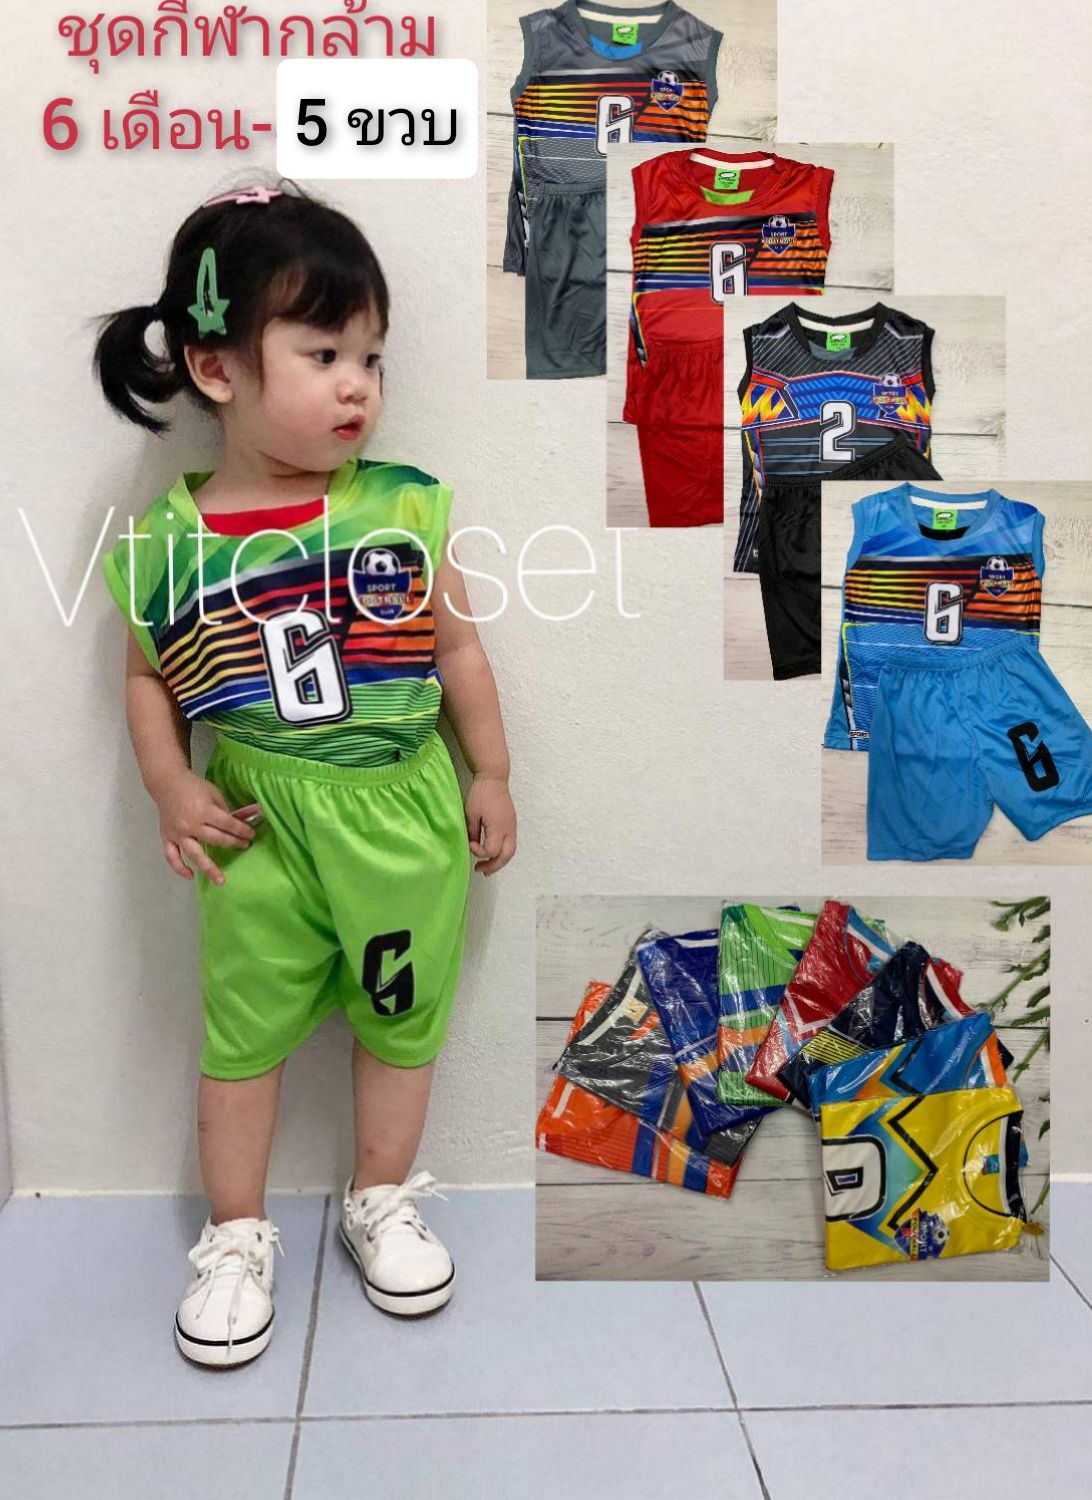 Vtitcloset ชุดบอลเด็ก(กล้าม) ชุดกีฬากล้ามผ้ามัน เด็ก 6 เดือน-5 ขวบ ใส่สบายๆ เลือกสีได้(คละแบบ) แบบเข้าใหม่ตลอดนะ (ควรดูรอบ อก เสื้อ เป็นเกณฑ์)